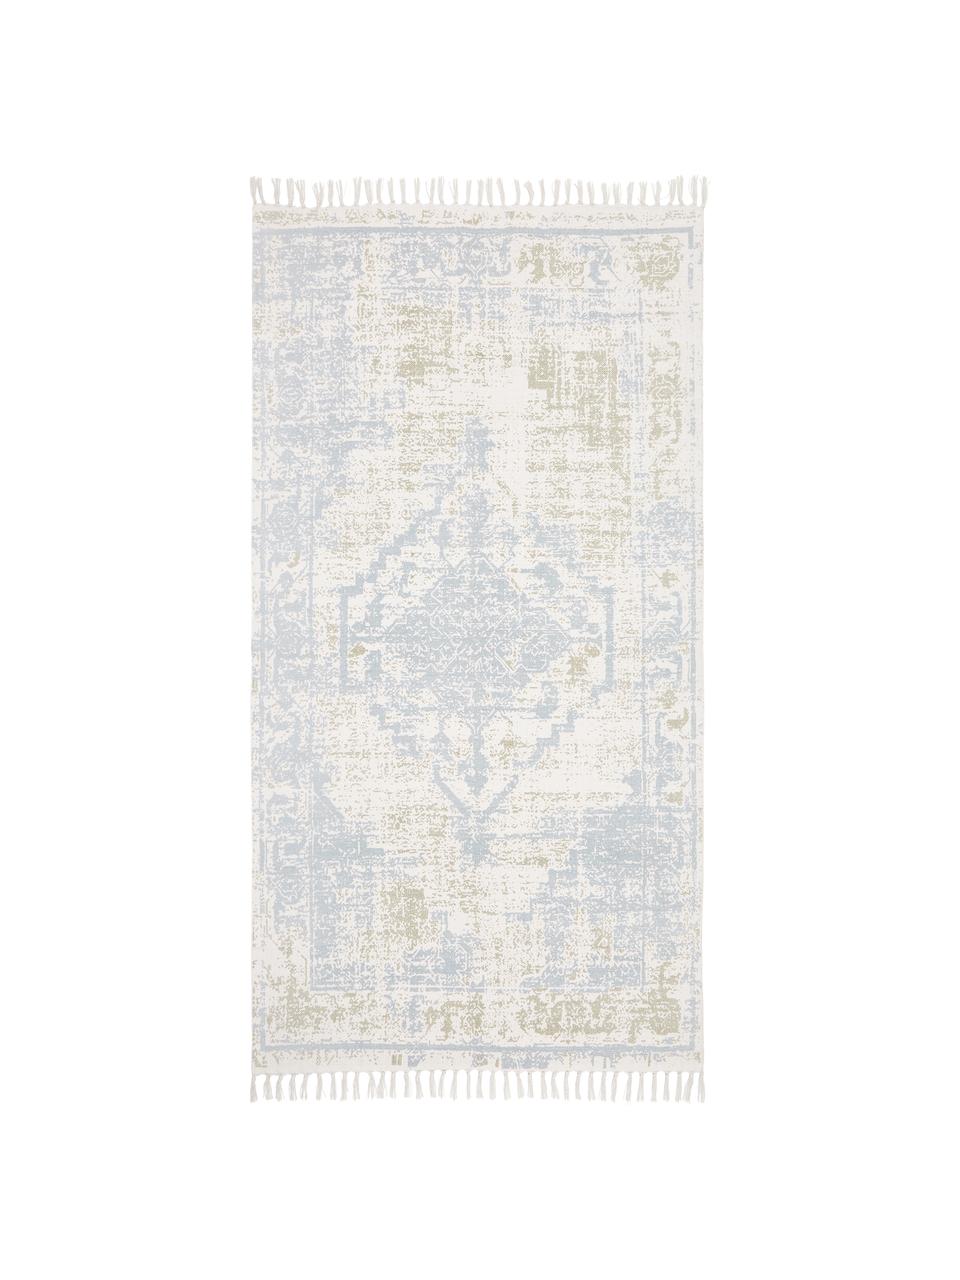 Tappeto vintage sottile in cotone beige/blu tessuto a mano Jasmine, Tonalità blu e bianche, Larg. 70 x Lung. 140 cm (taglia XS)